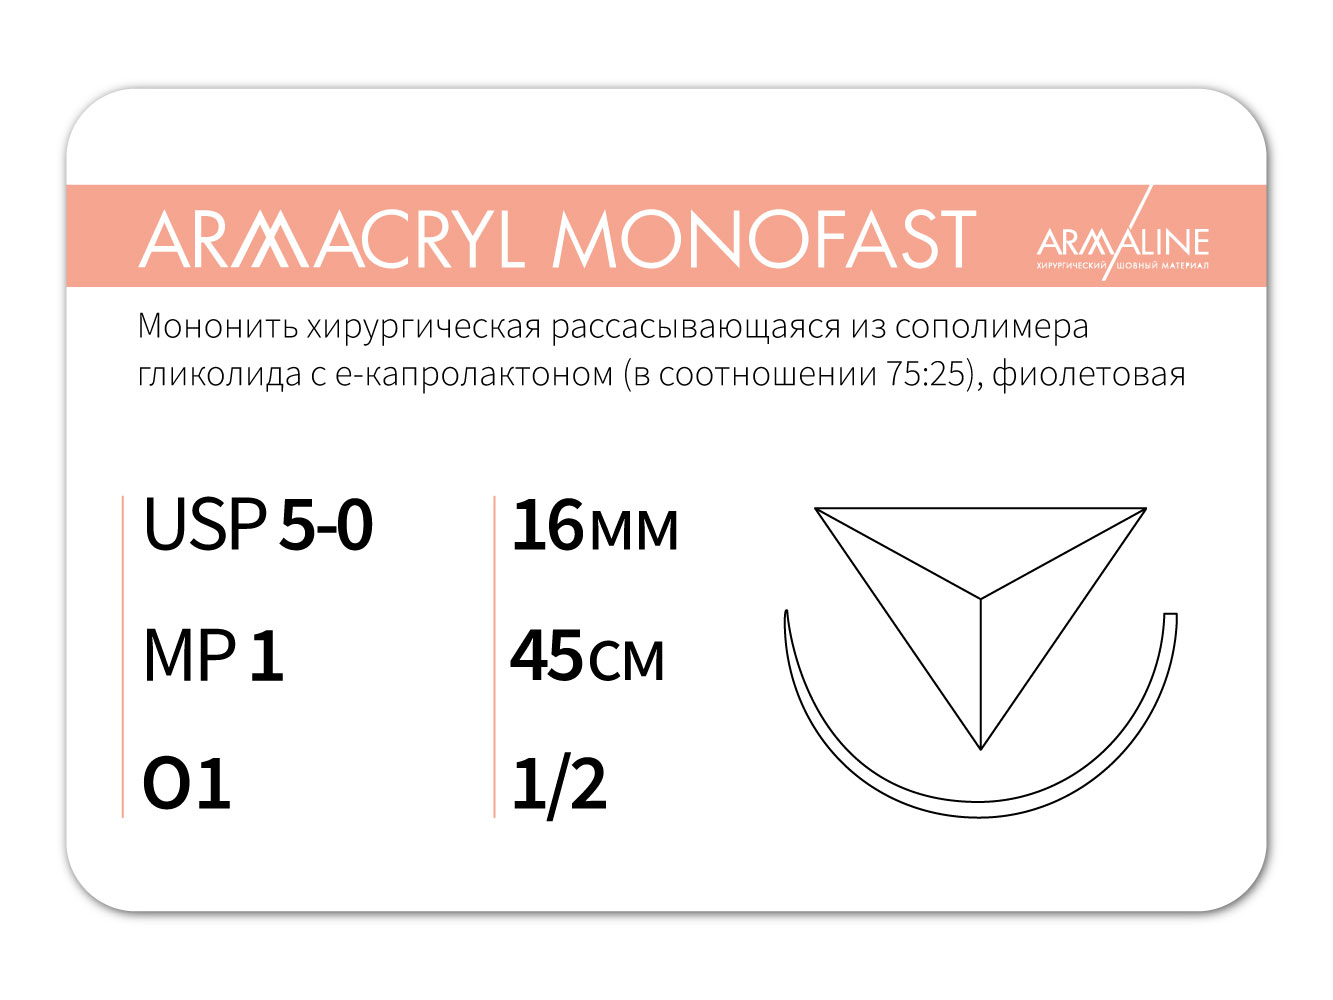 ARMACRYL MONOFAST/Армакрил монофаст (5-0) 45 см - материал хирургический шовный стерильный с атравматической обратно-режущей иглой